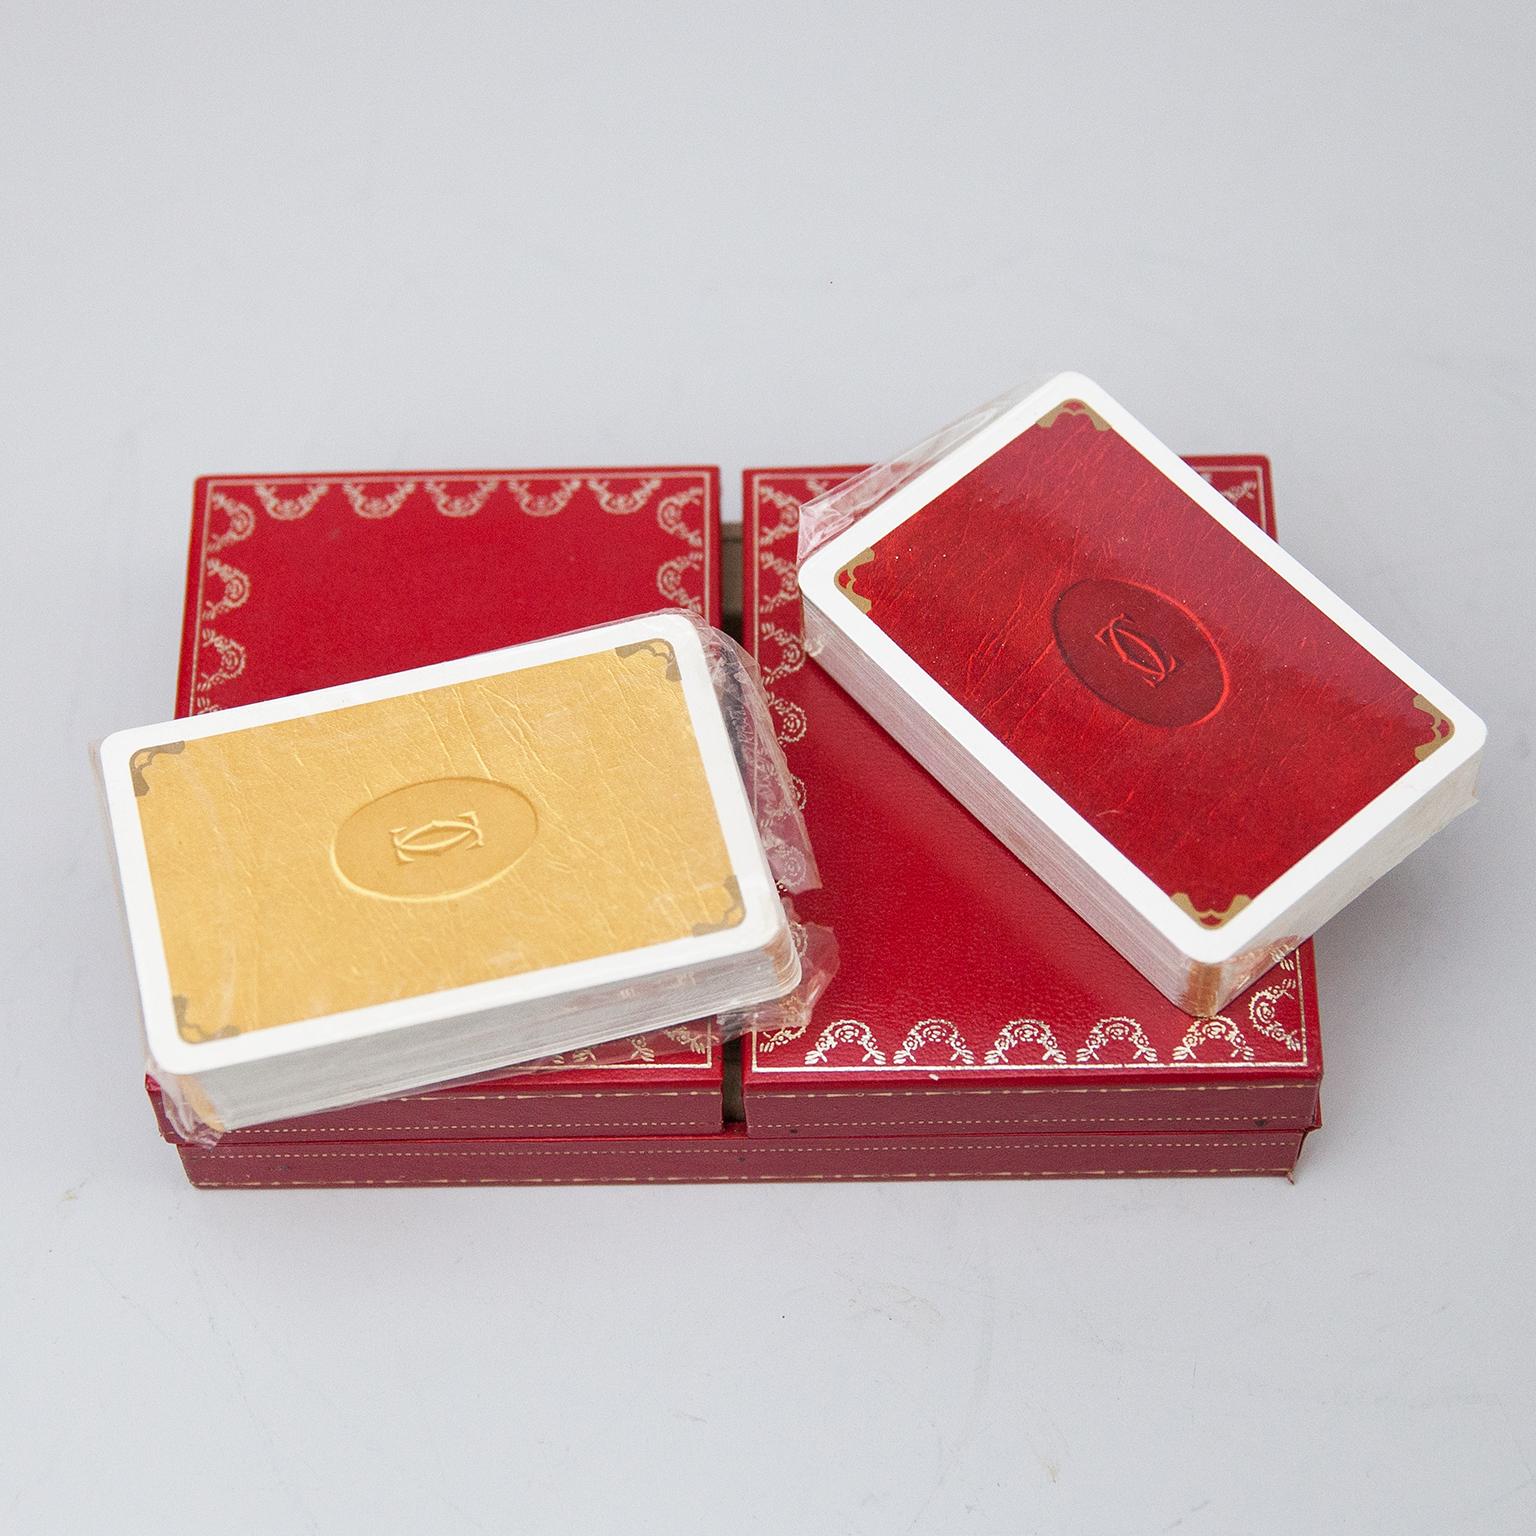 Boîte de cartes à jouer Cartier jamais utilisée, un jeu plus joker, poker, bridge dans un étui rouge Cartier à 2 portes. Les cartes à jouer Les Must de Cartier n'ont été vendues que de 1972 à 1976. La boîte de cartes doublée de soie avec des coins